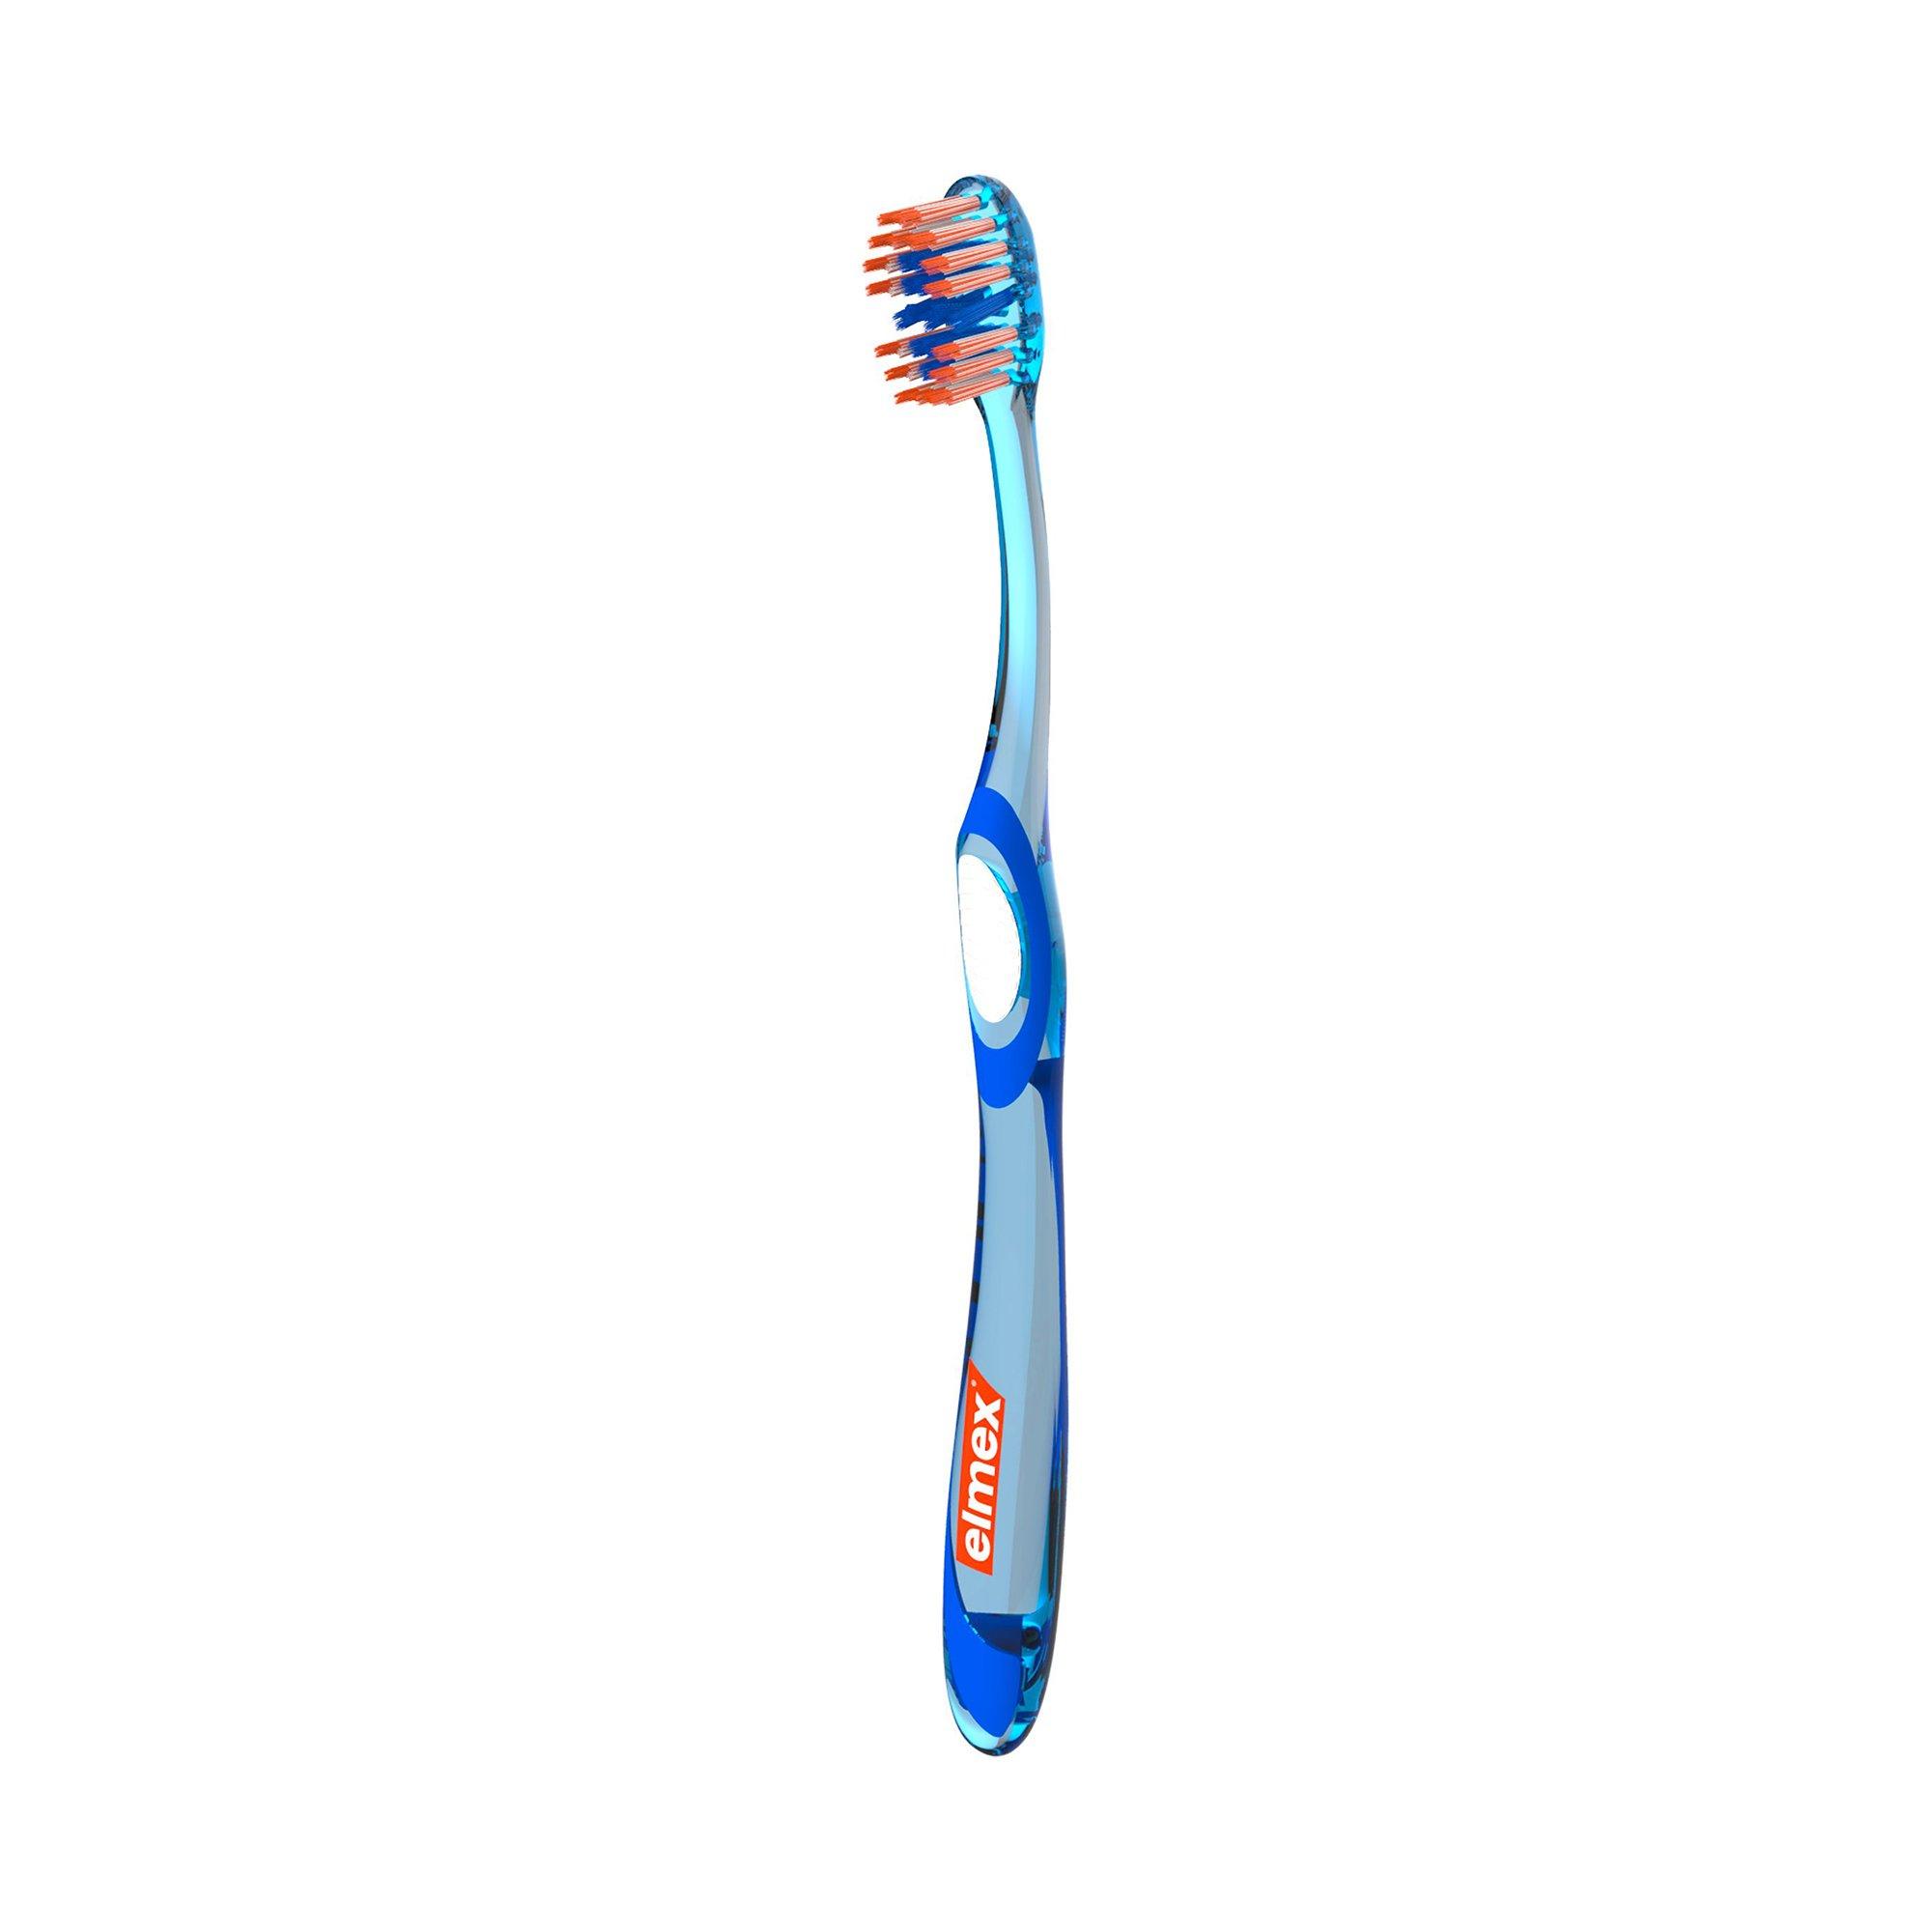 elmex  Pro Interdental Mittel Zahnbürste, Präzise Reinigung Der Zahnzwischenräume 